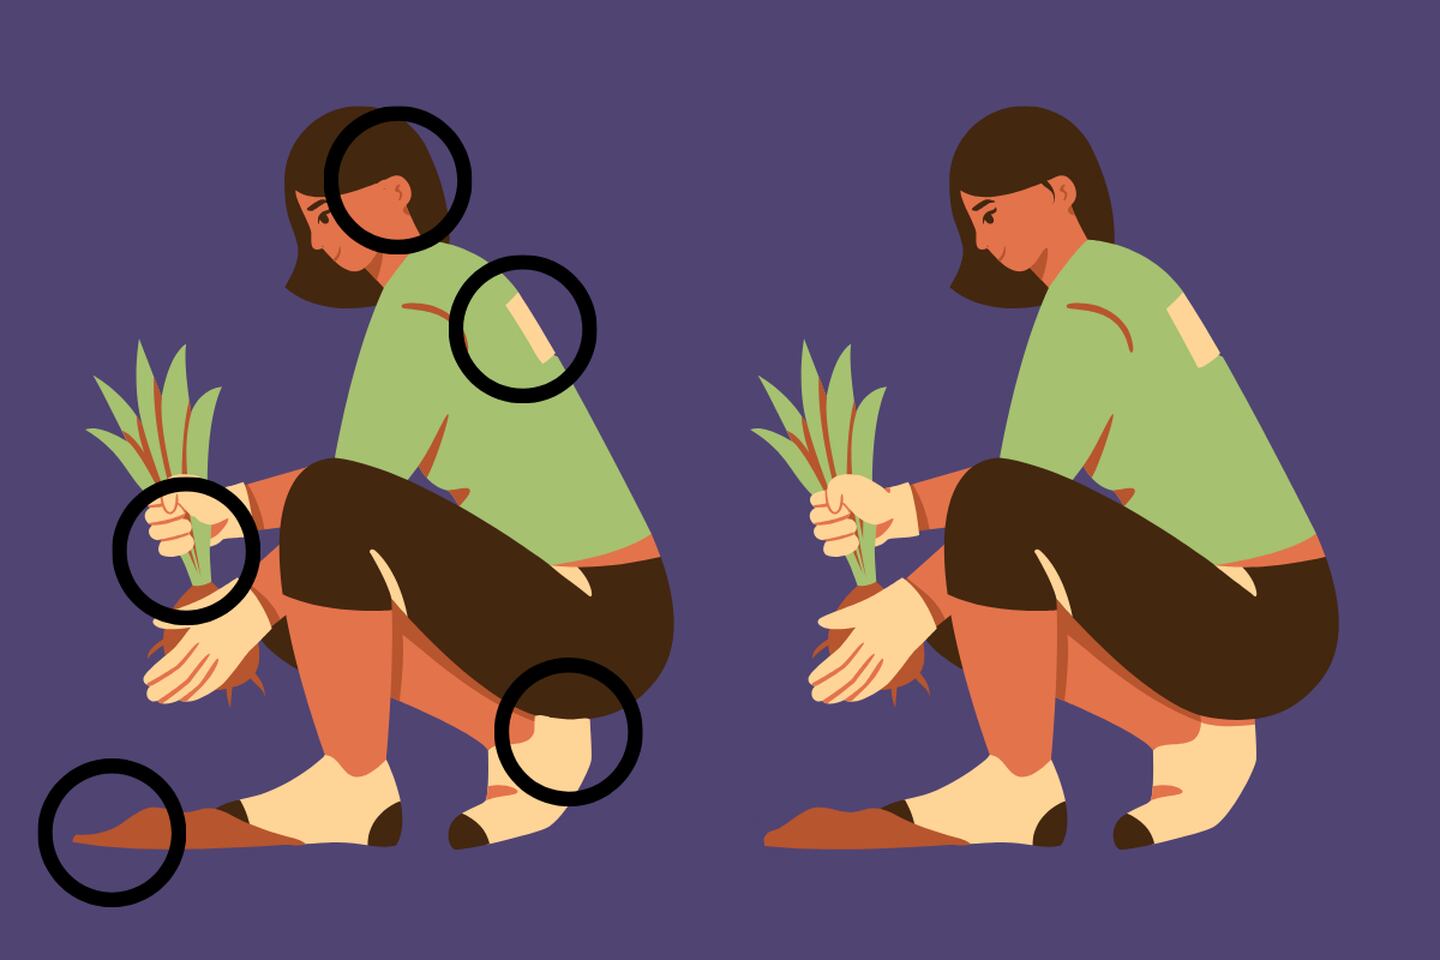 En este test visual podemos ver la imagen de dos mujeres plantando, y aunque parecen iguales, hay 5 diferencias entre ellas.